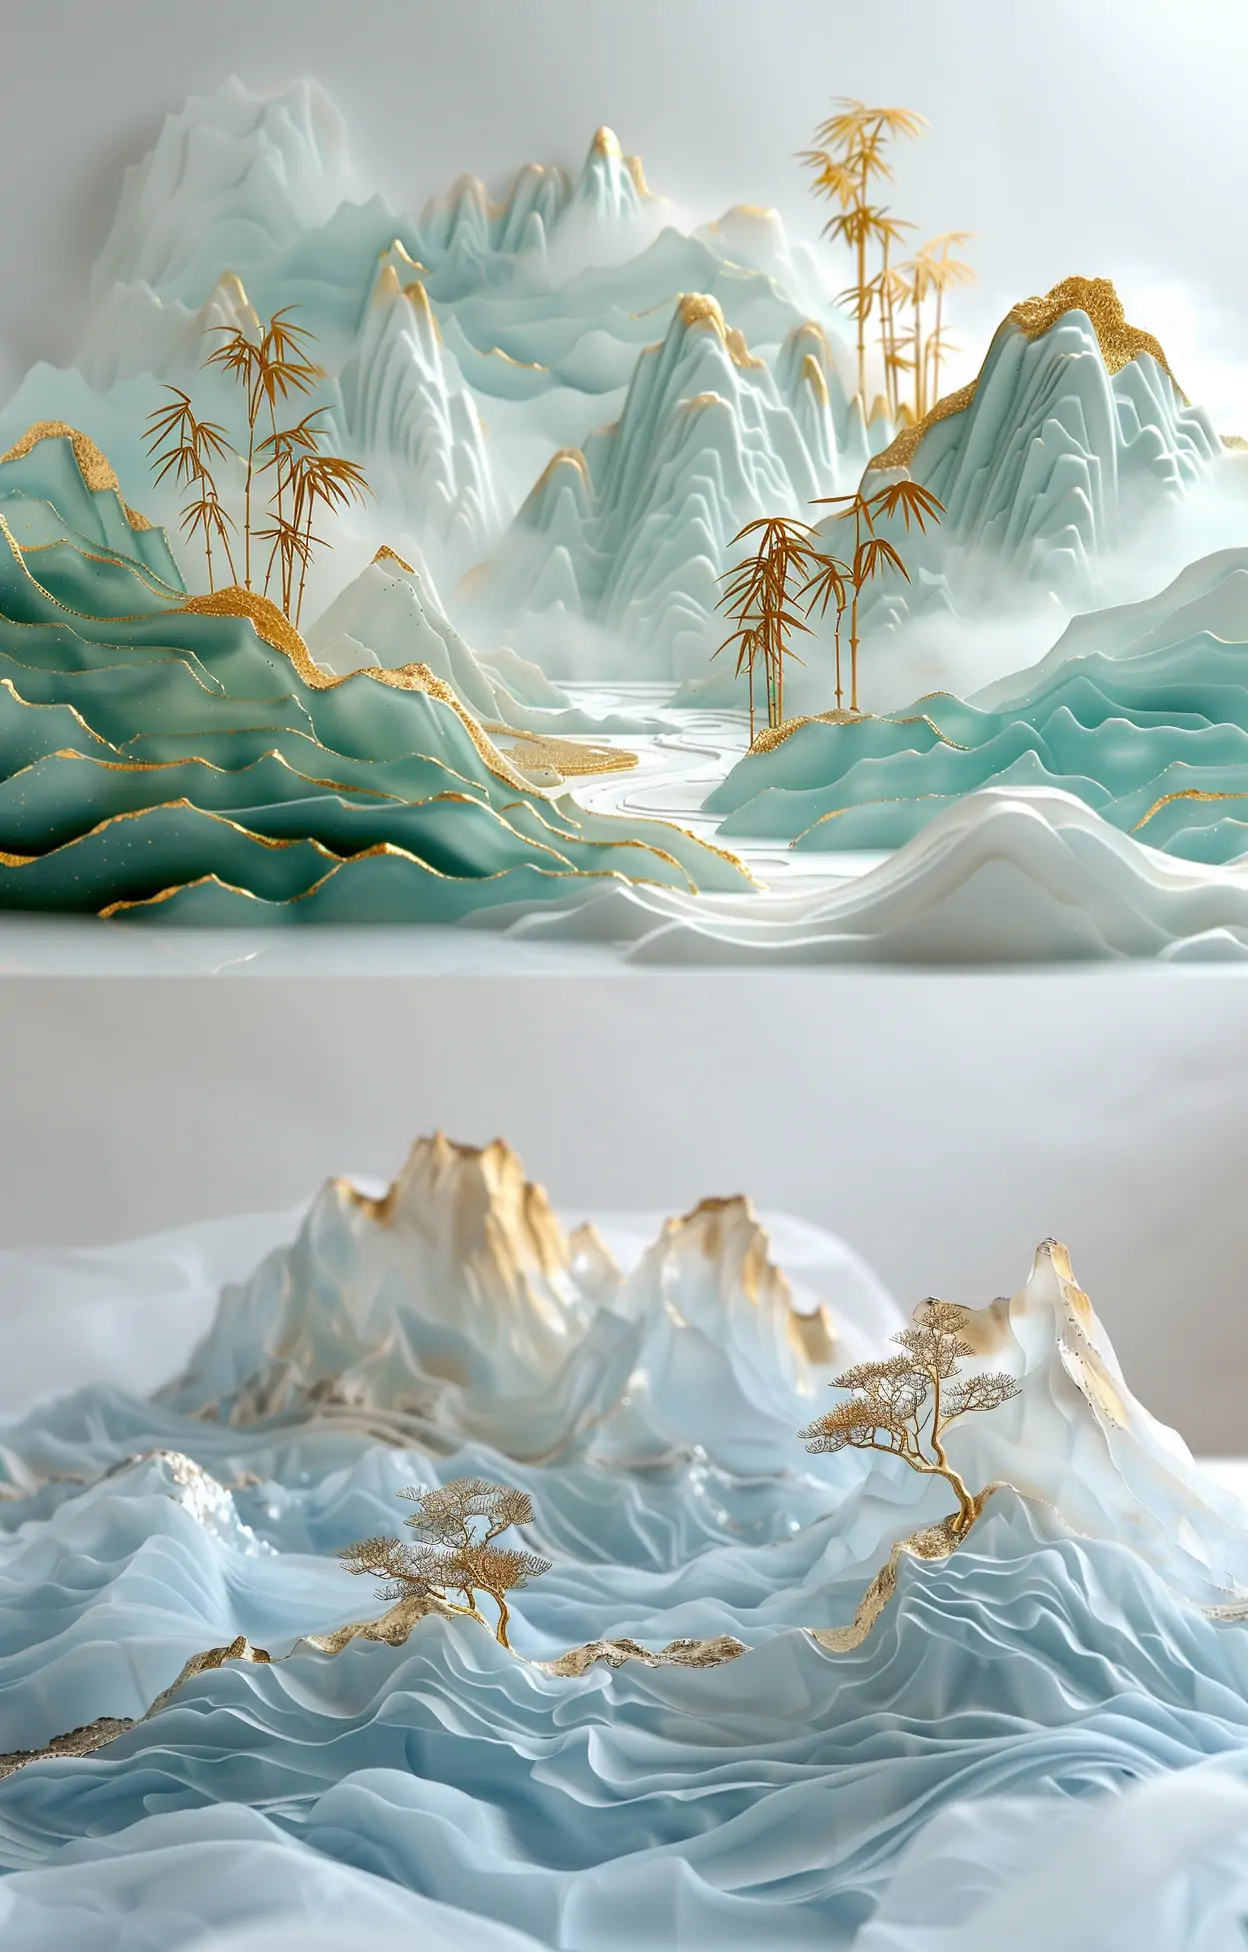 中国风3D立体烫金自然山水半透明树脂波浪雕塑模型midjourney关键词咒语-Ai宇宙吧-